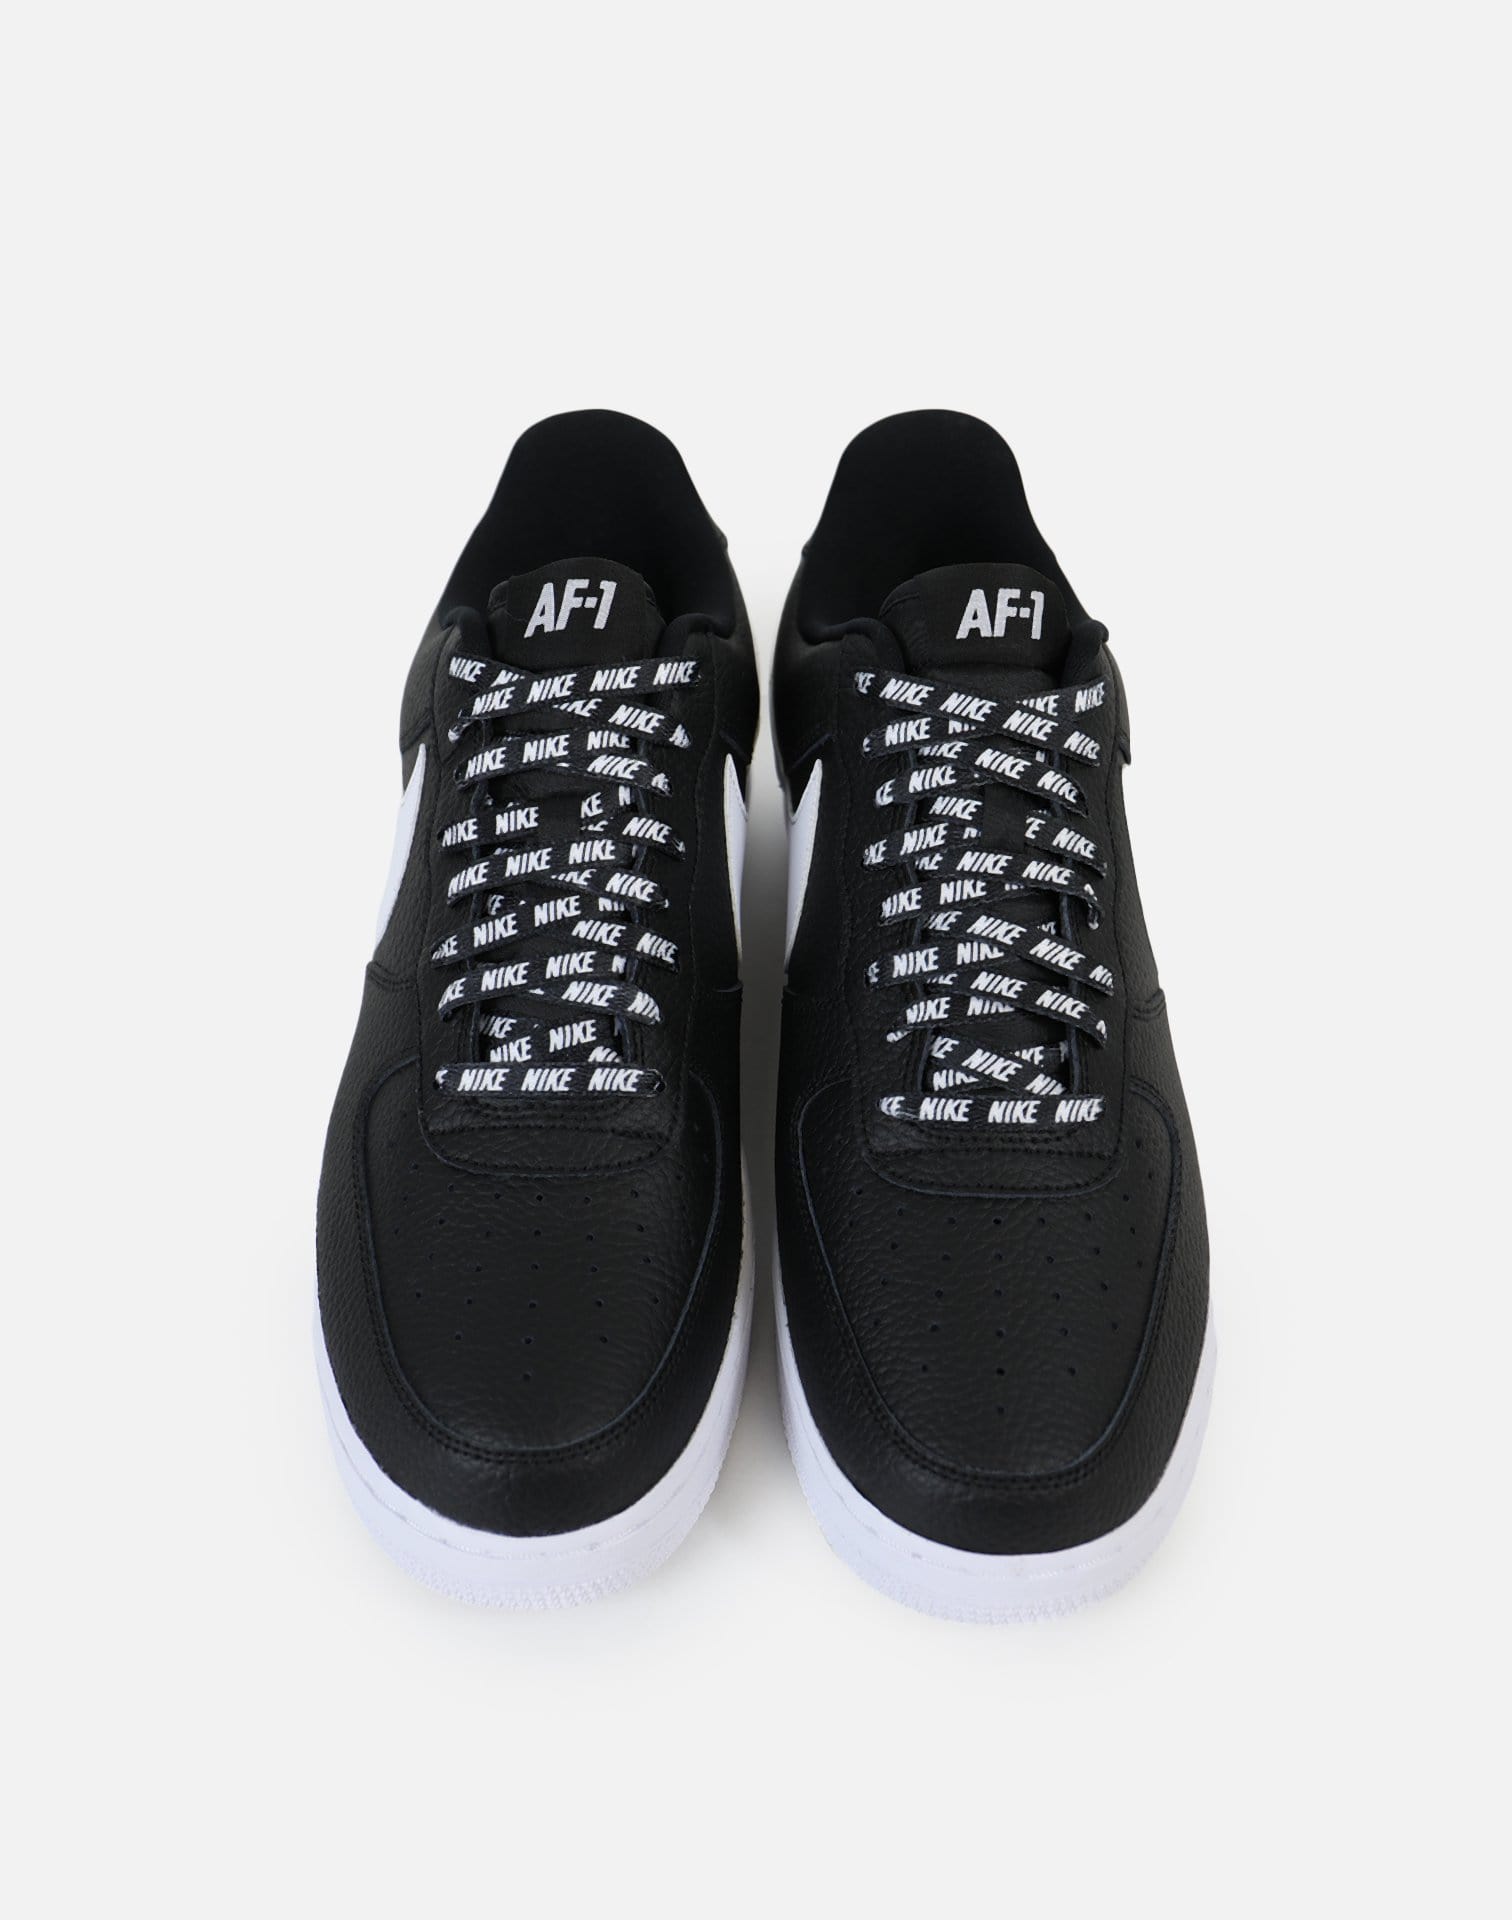 Nike Air Force 1 '07 LV8 NBA Pack Black/White - 823511-007